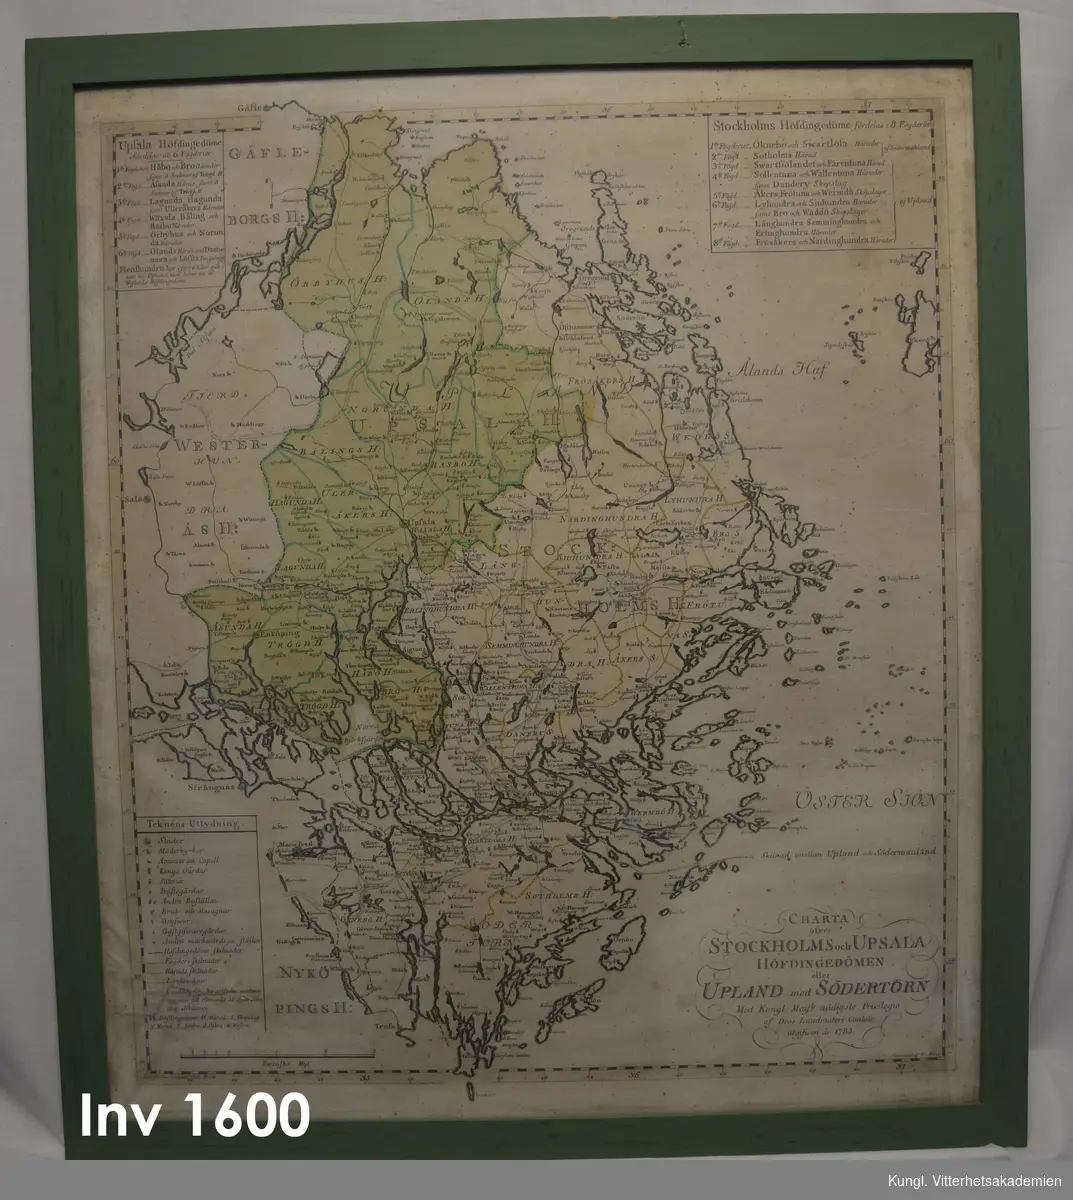 Tavla, "Charta öfwer Stockholms o. Upsala höfdingedöme eller Uppland
med Södertörn 1785" . Graverad karta från 1785, inramad med en enkel grönmålad ram, utan profilering. Kartan sträcker sig från Gävle i norr til Landsort i söder